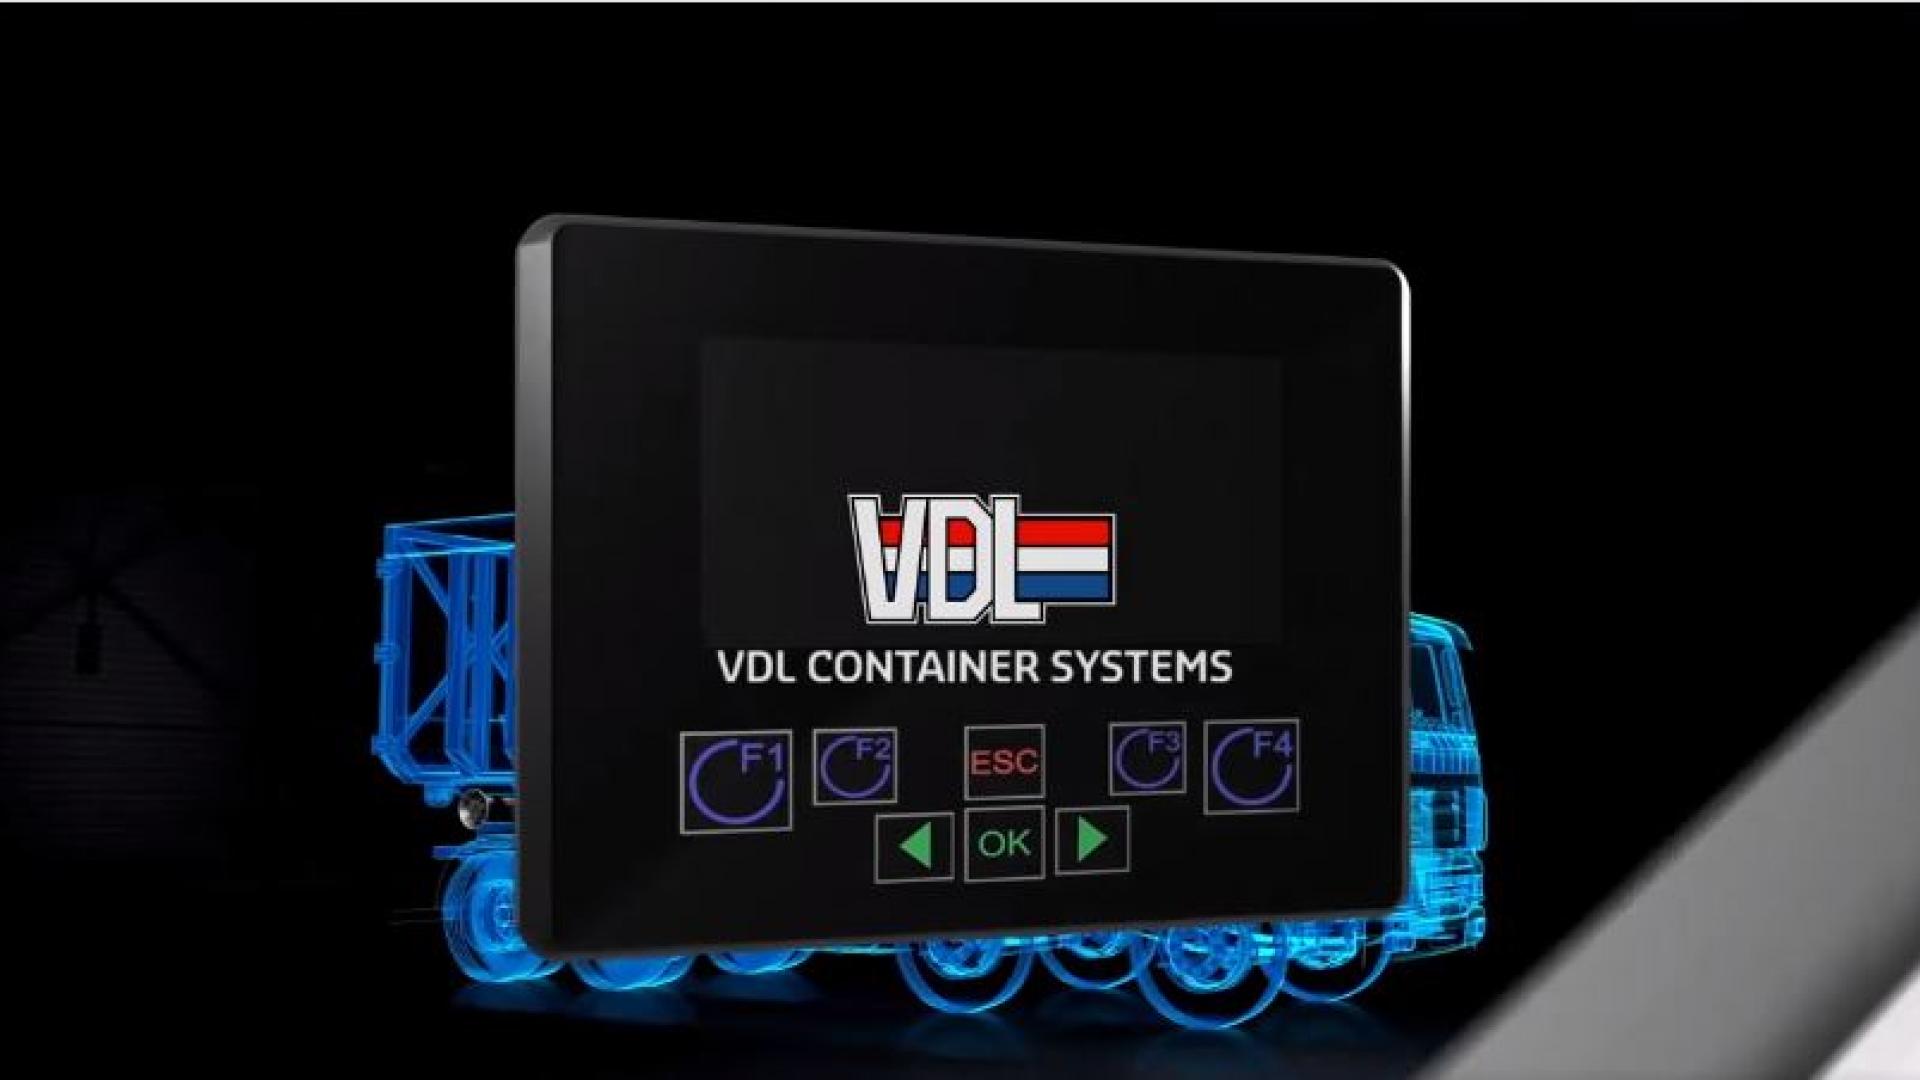 VDL toont haar nieuwe controller met display op de Bauma